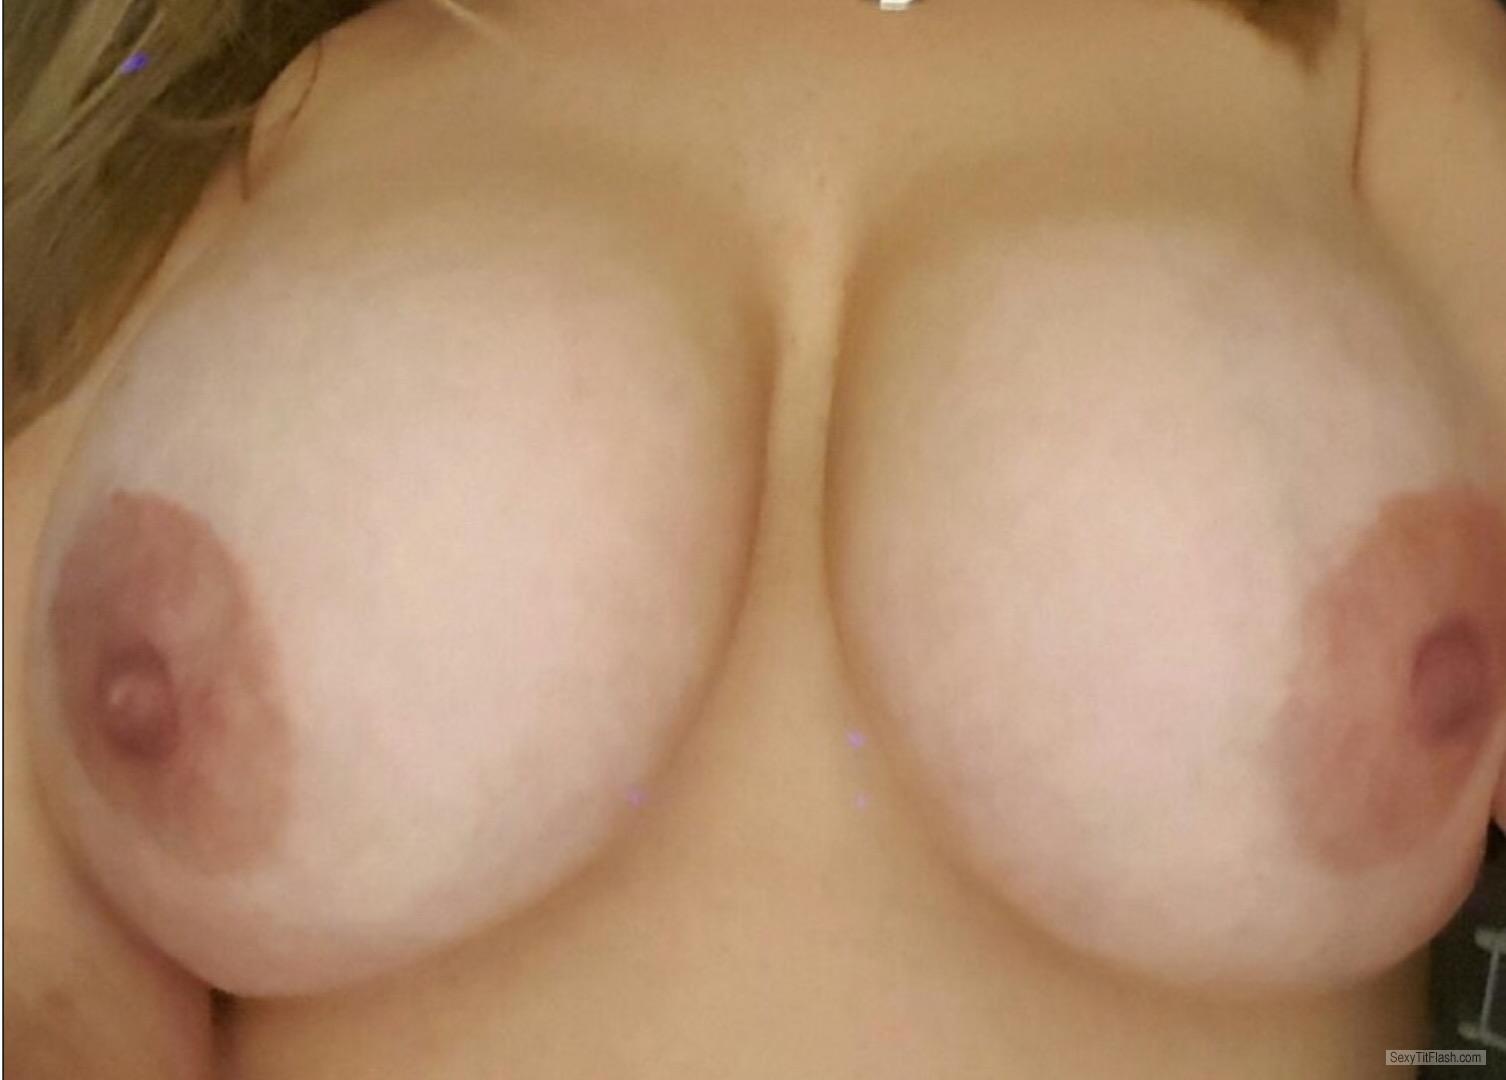 Tit Flash: My Big Tits (Selfie) - Mandyb from United Kingdom